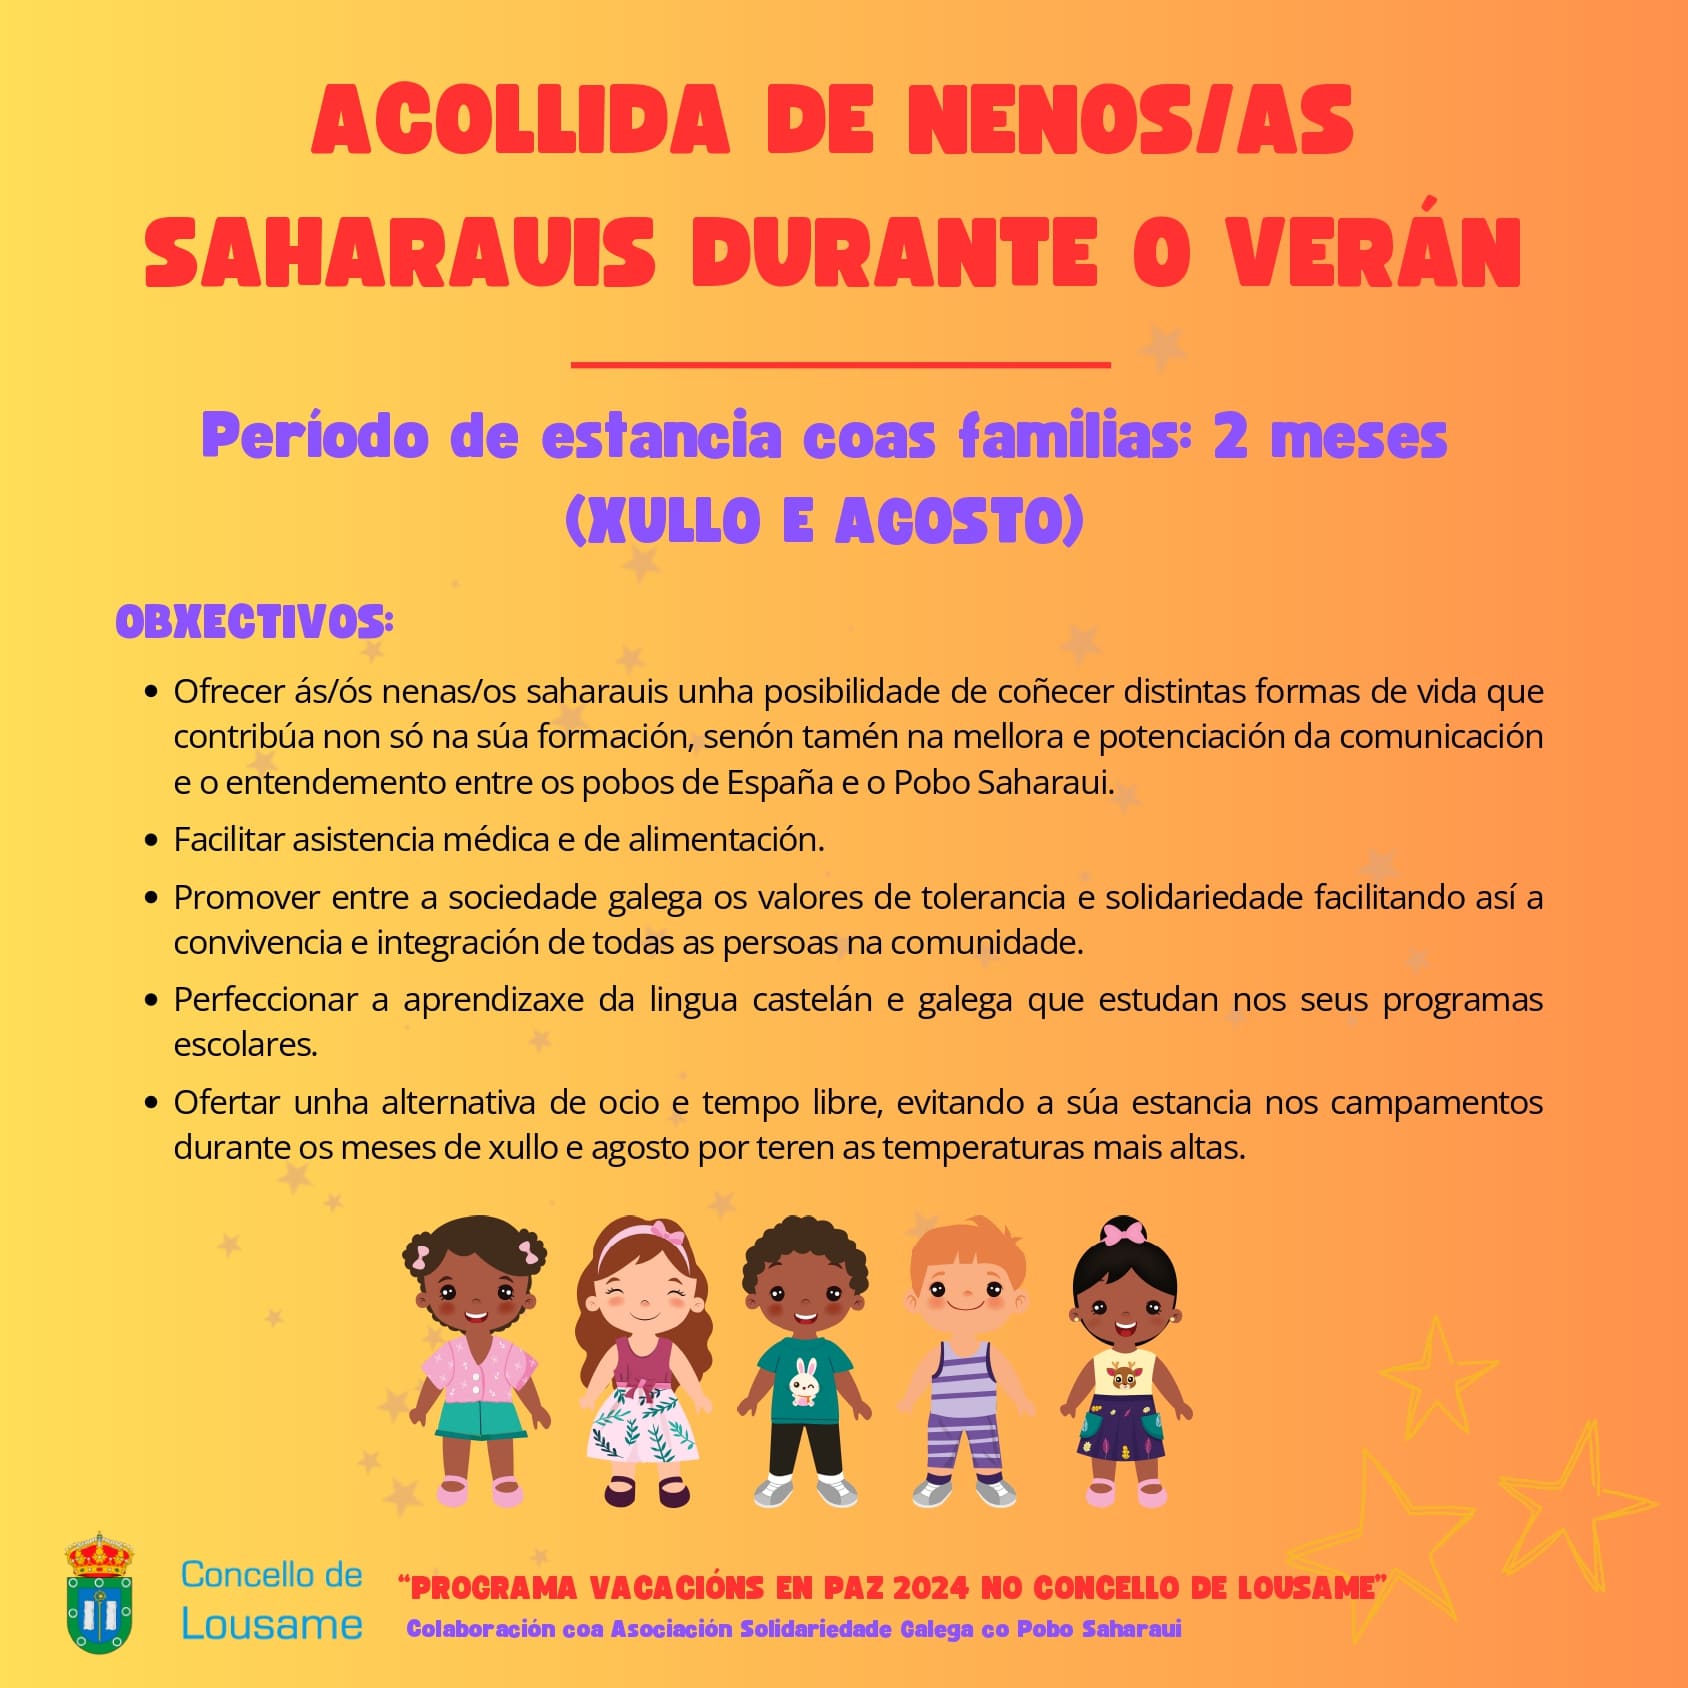 Programa de acollida de nenos/as saharauis durante o verán